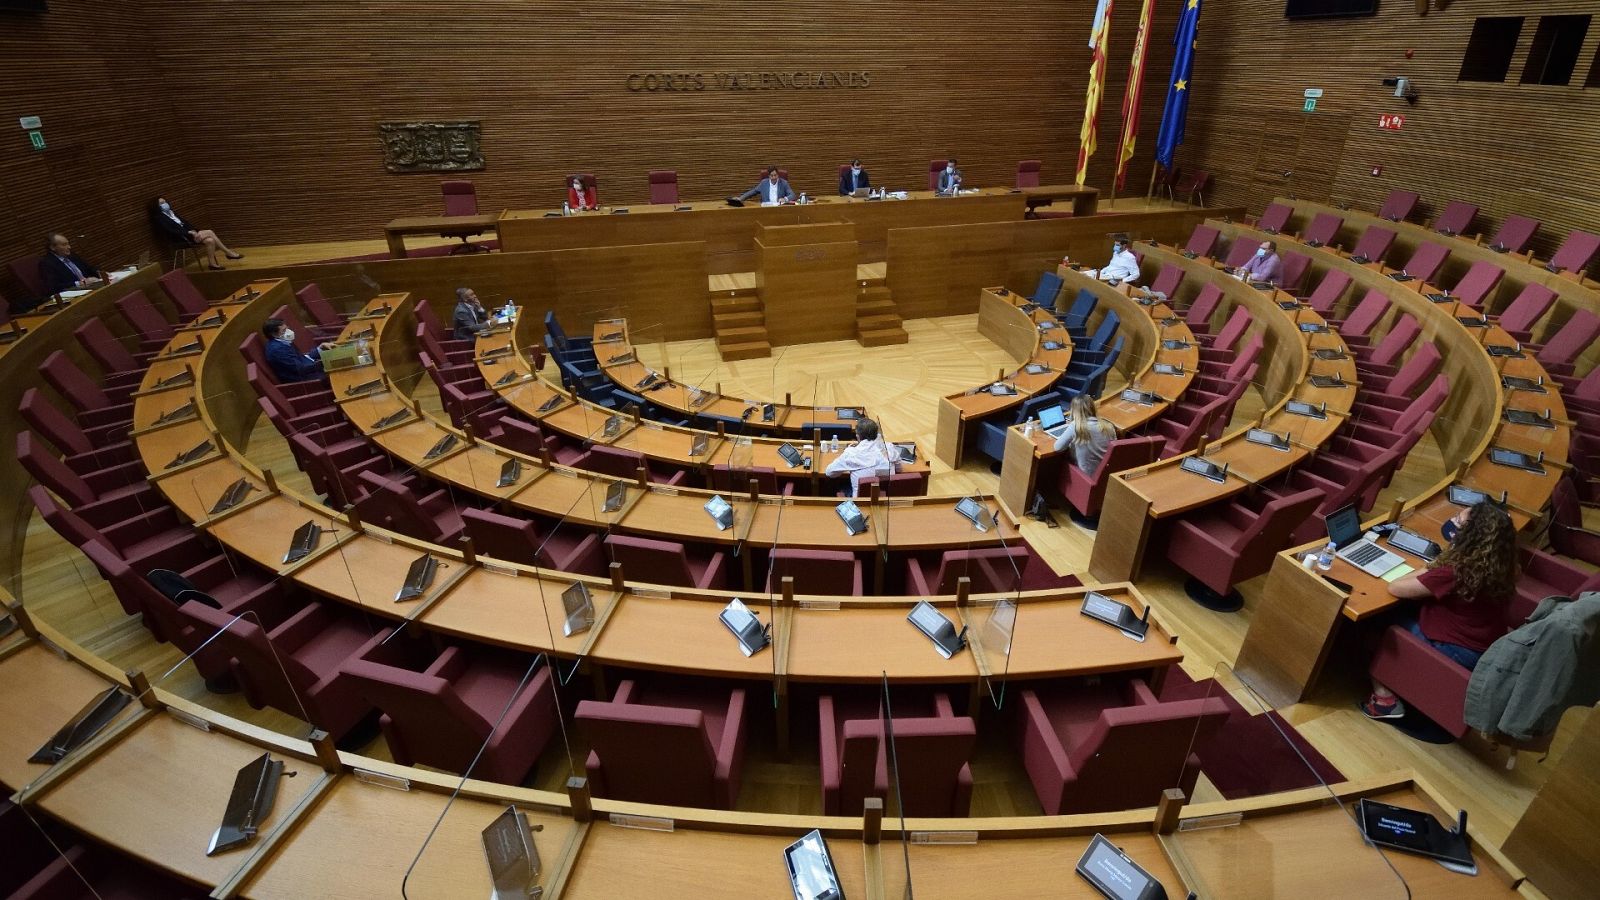 El hemiciclo de Les Corts, el parlamento autonómico de la Comunidad Valenciana